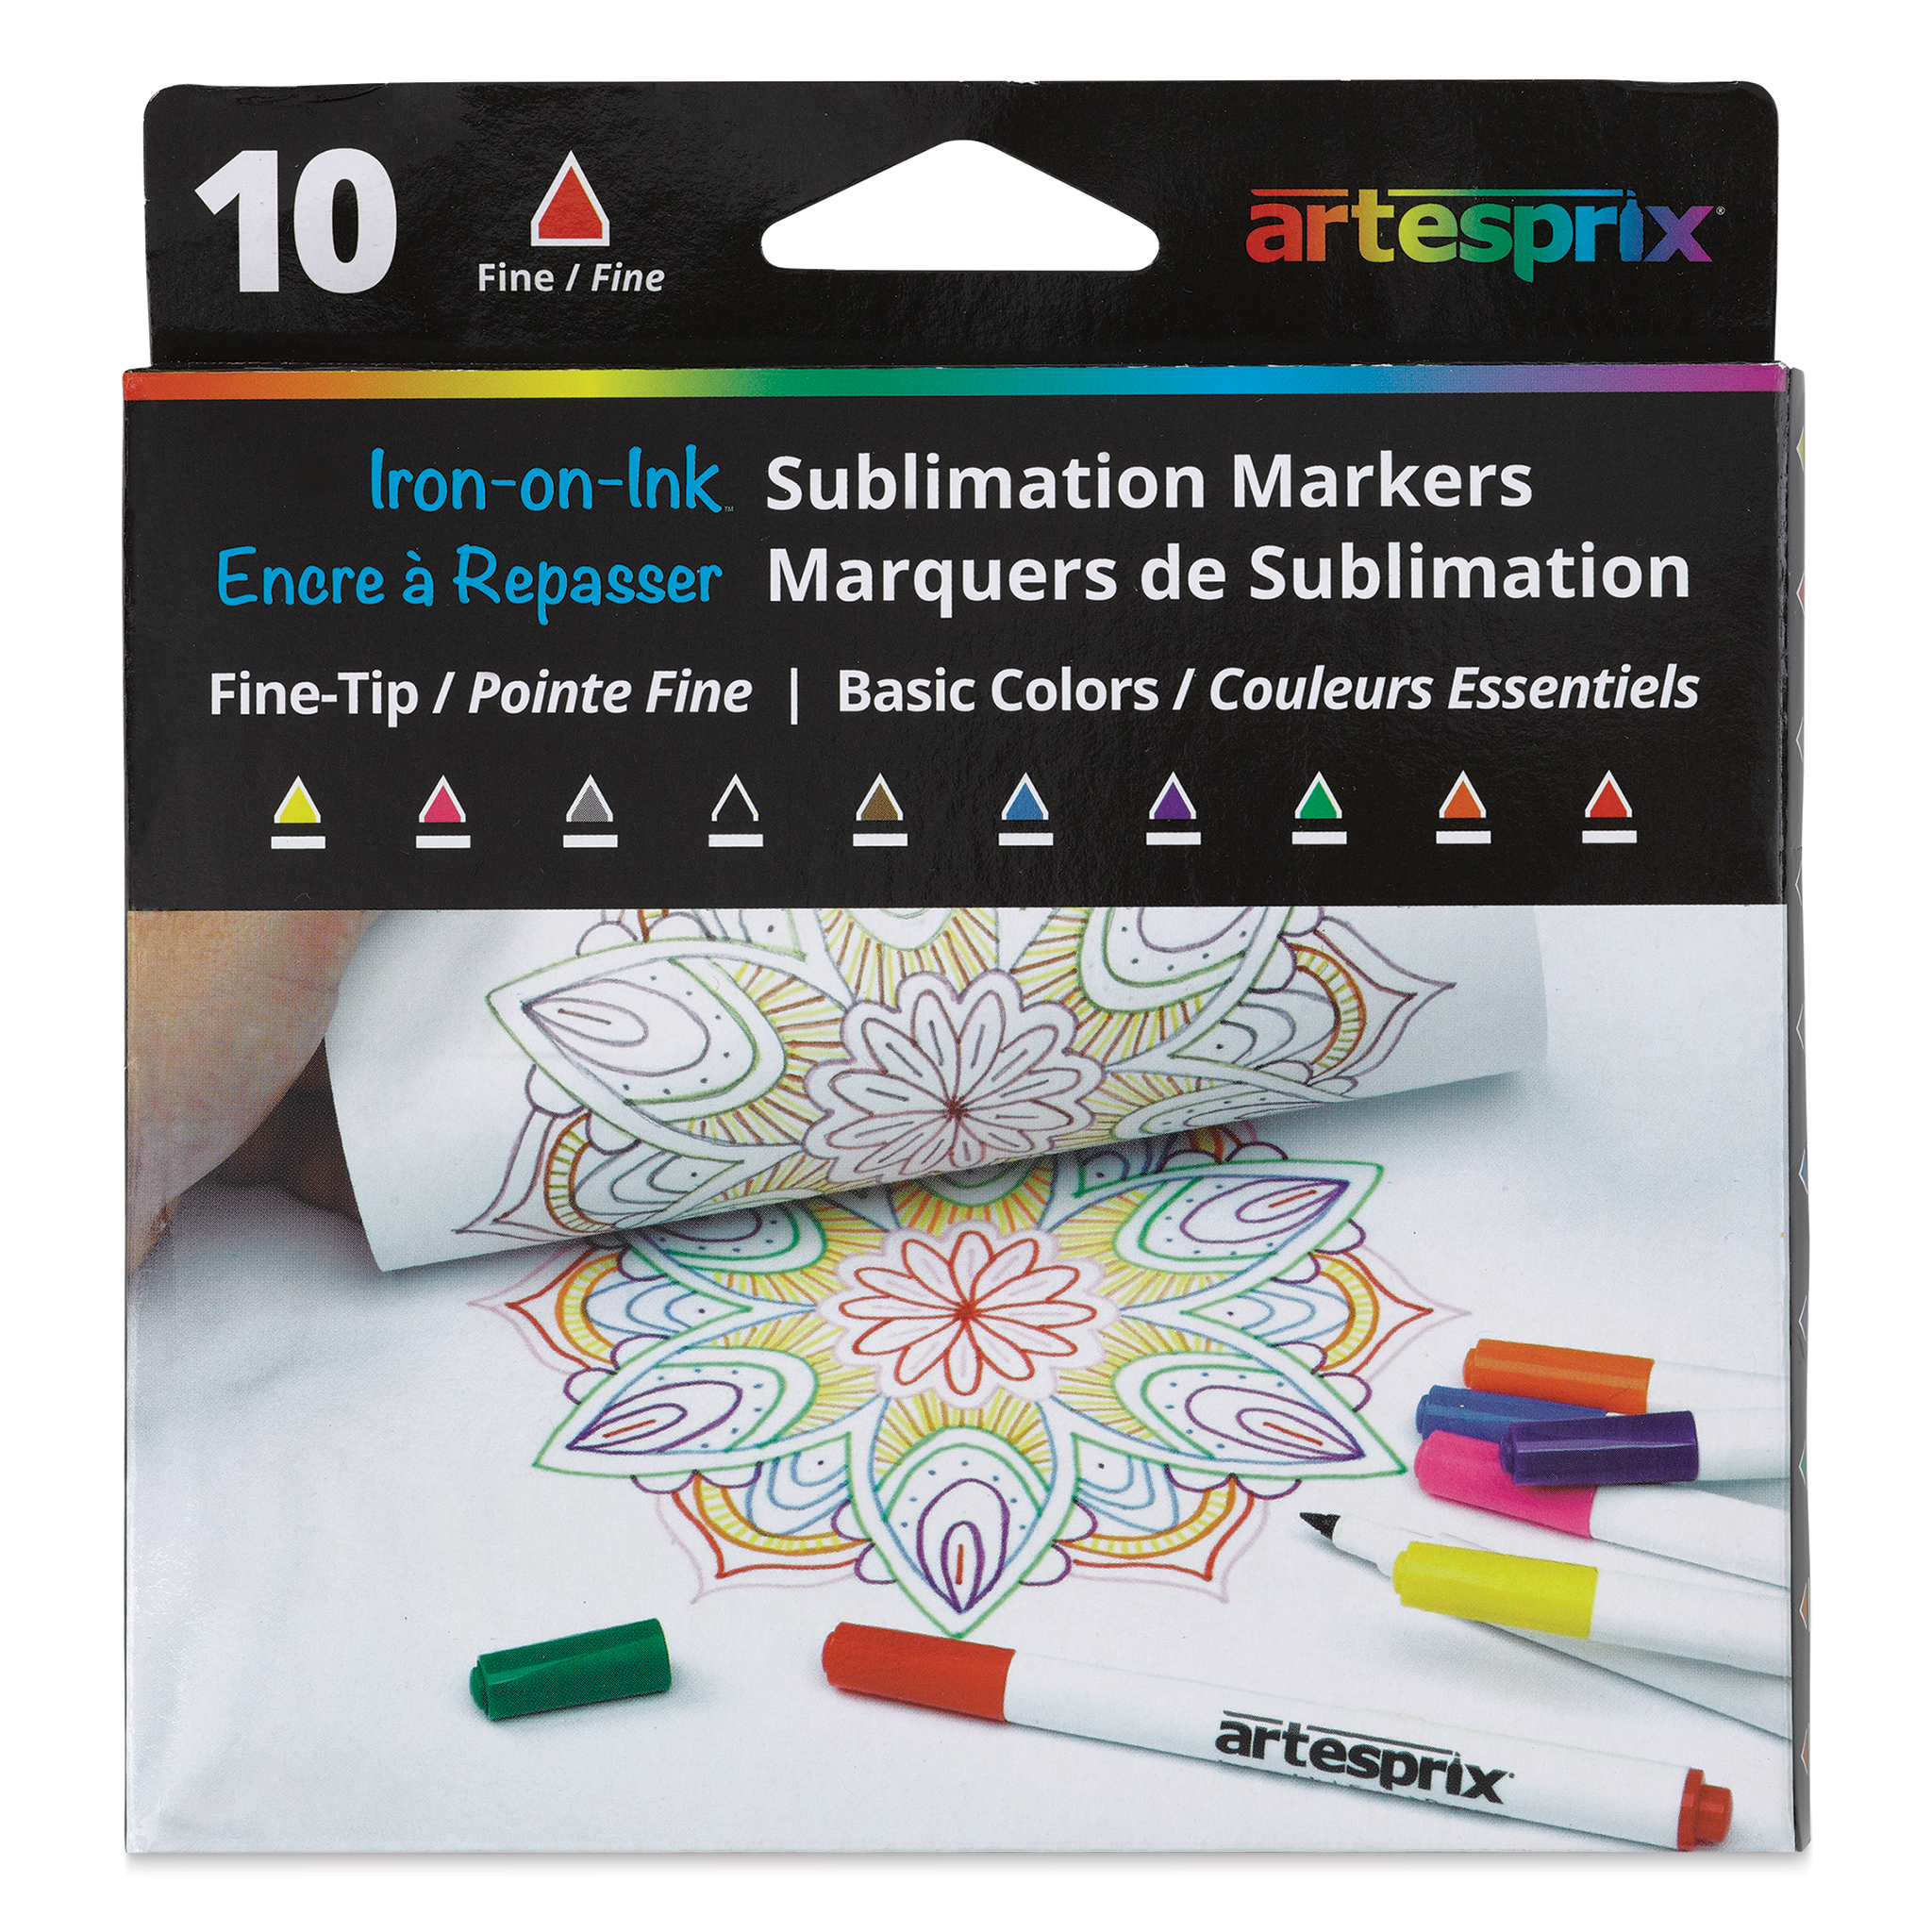  Artesprix Sublimation Printing Starter Kit